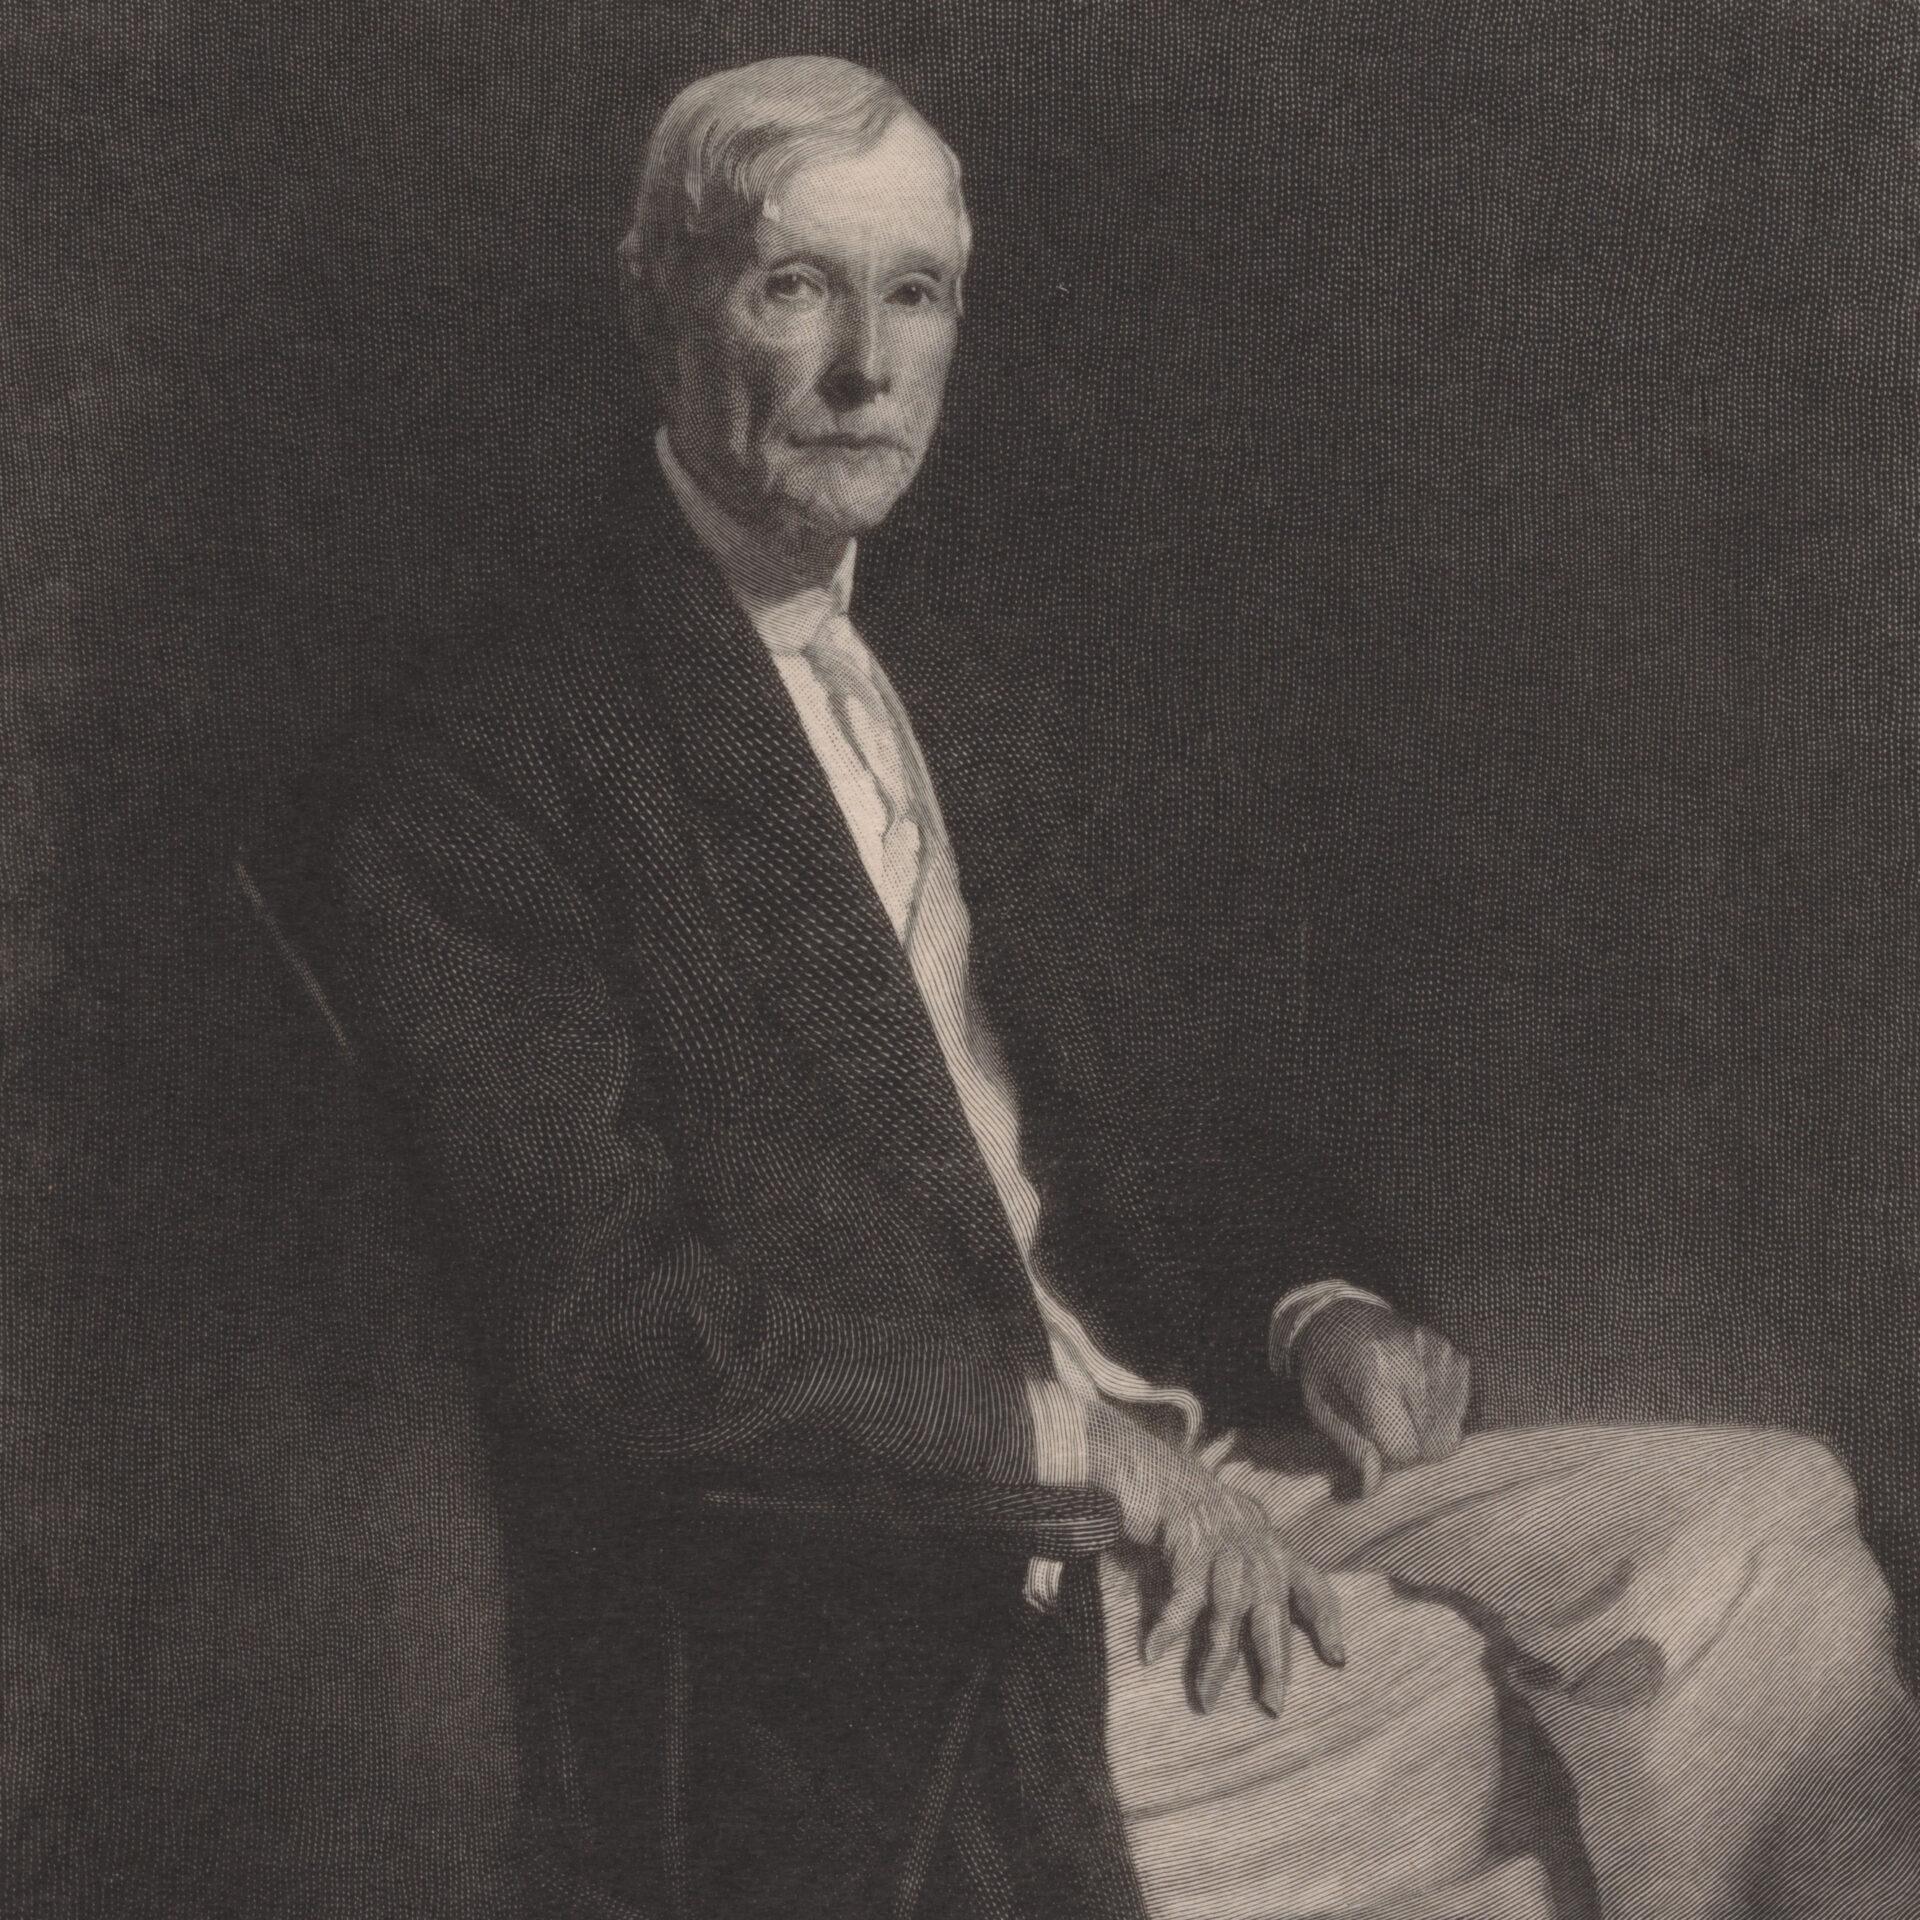 Biography of John D. Rockefeller